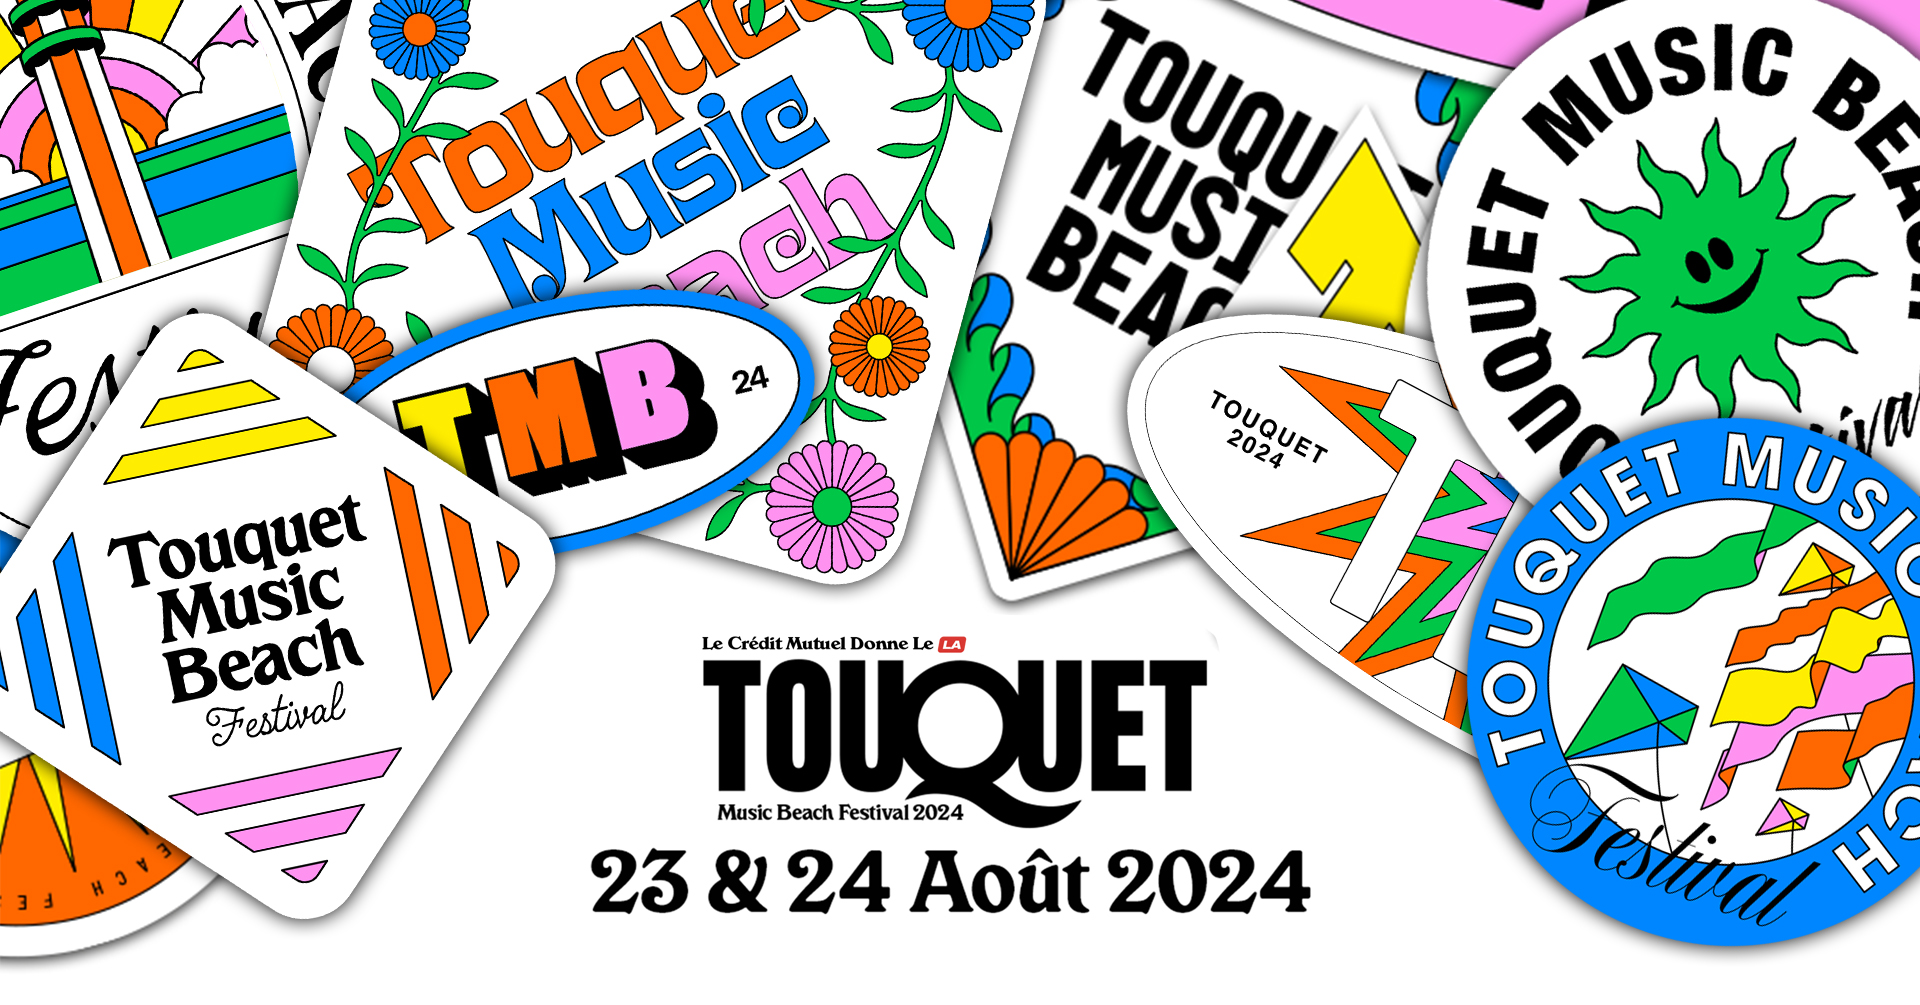 Billets et pass Touquet Music Beach Festival 2024 Infos et prix des